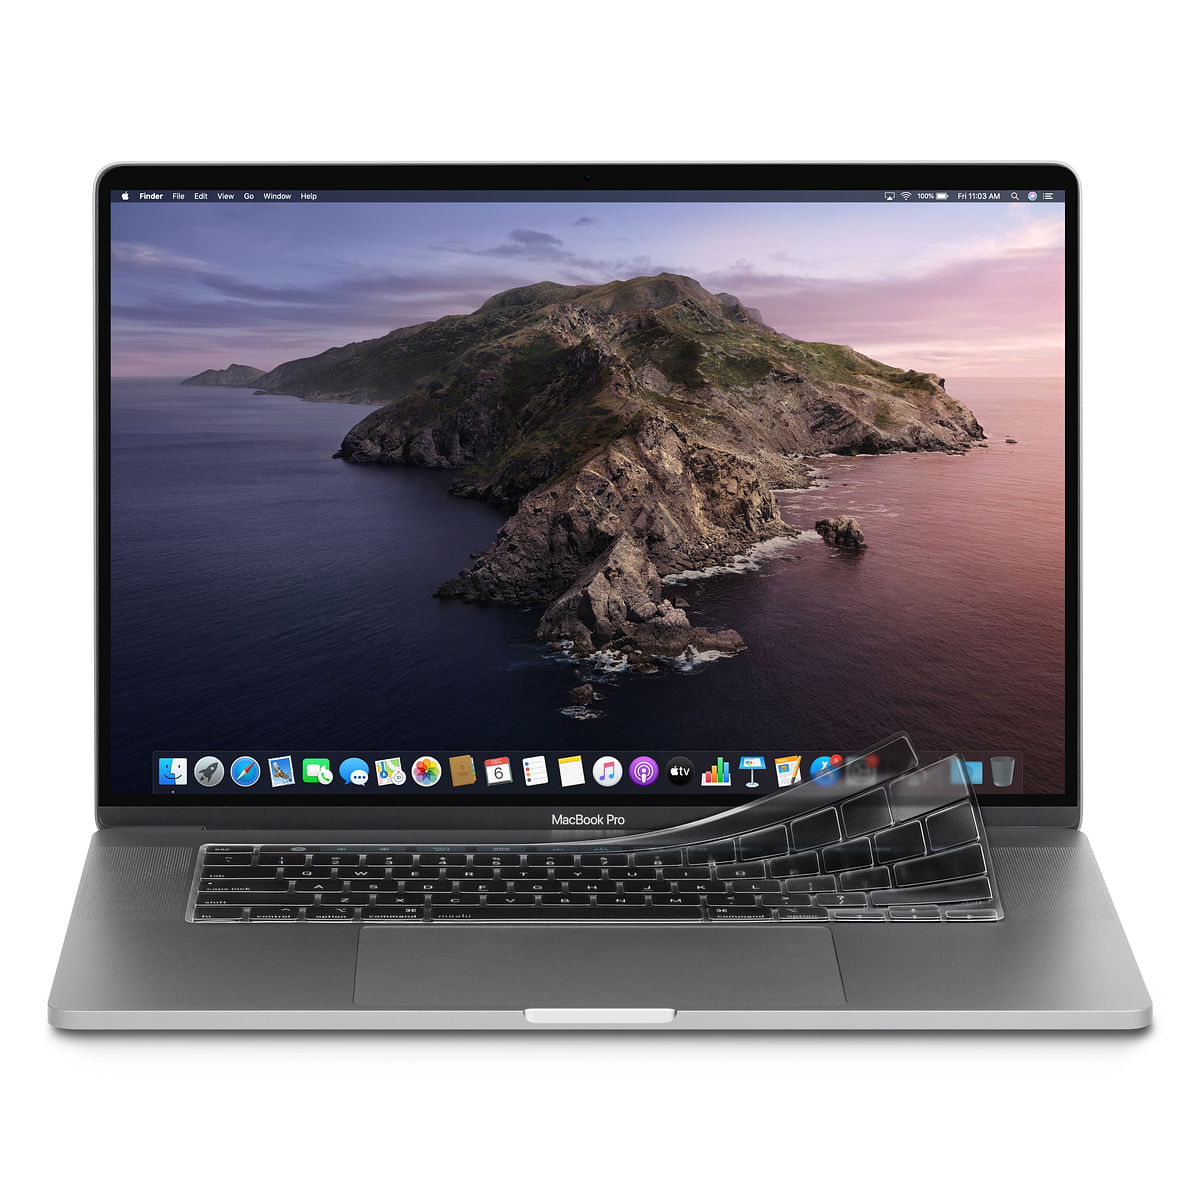 واقي لوحة مفاتيح Moshi ClearGuard لجهاز Apple MacBook Pro 13 "2020 / M1 2020 و MacBook Pro 16" نحيف وقابل للغسل والحماية من الغبار والانسكابات (تخطيط الاتحاد الأوروبي) - شفاف